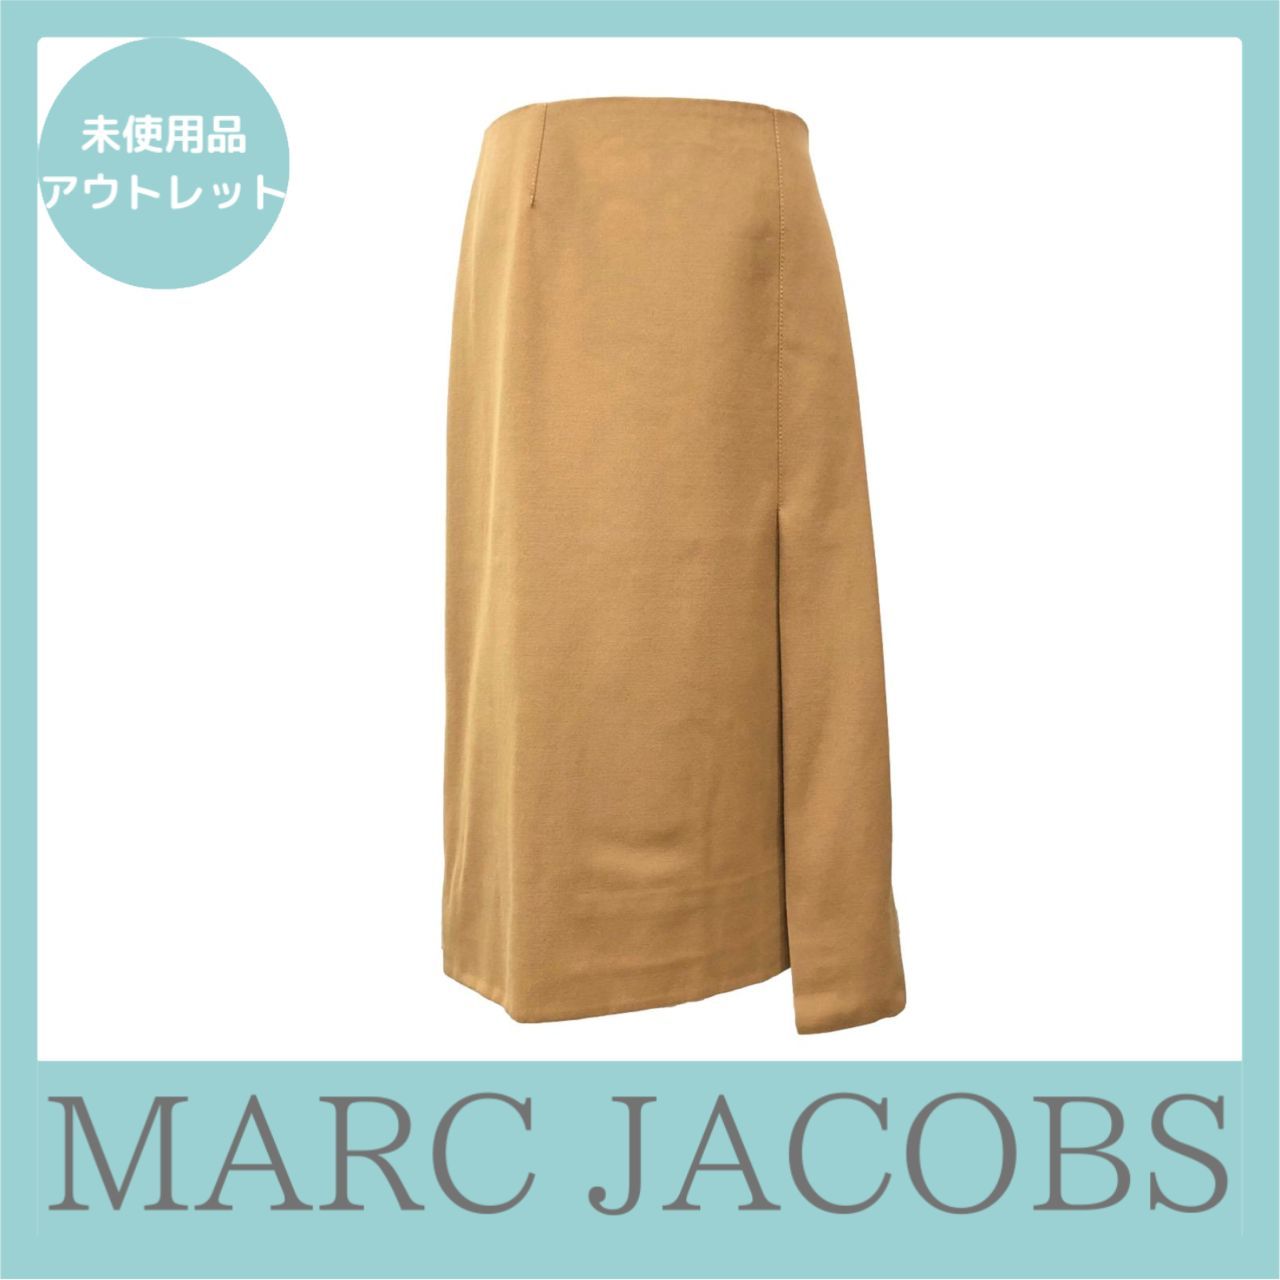 MARC JACOBS マークジェイコブス サイドジップスカート 0 サイズ-